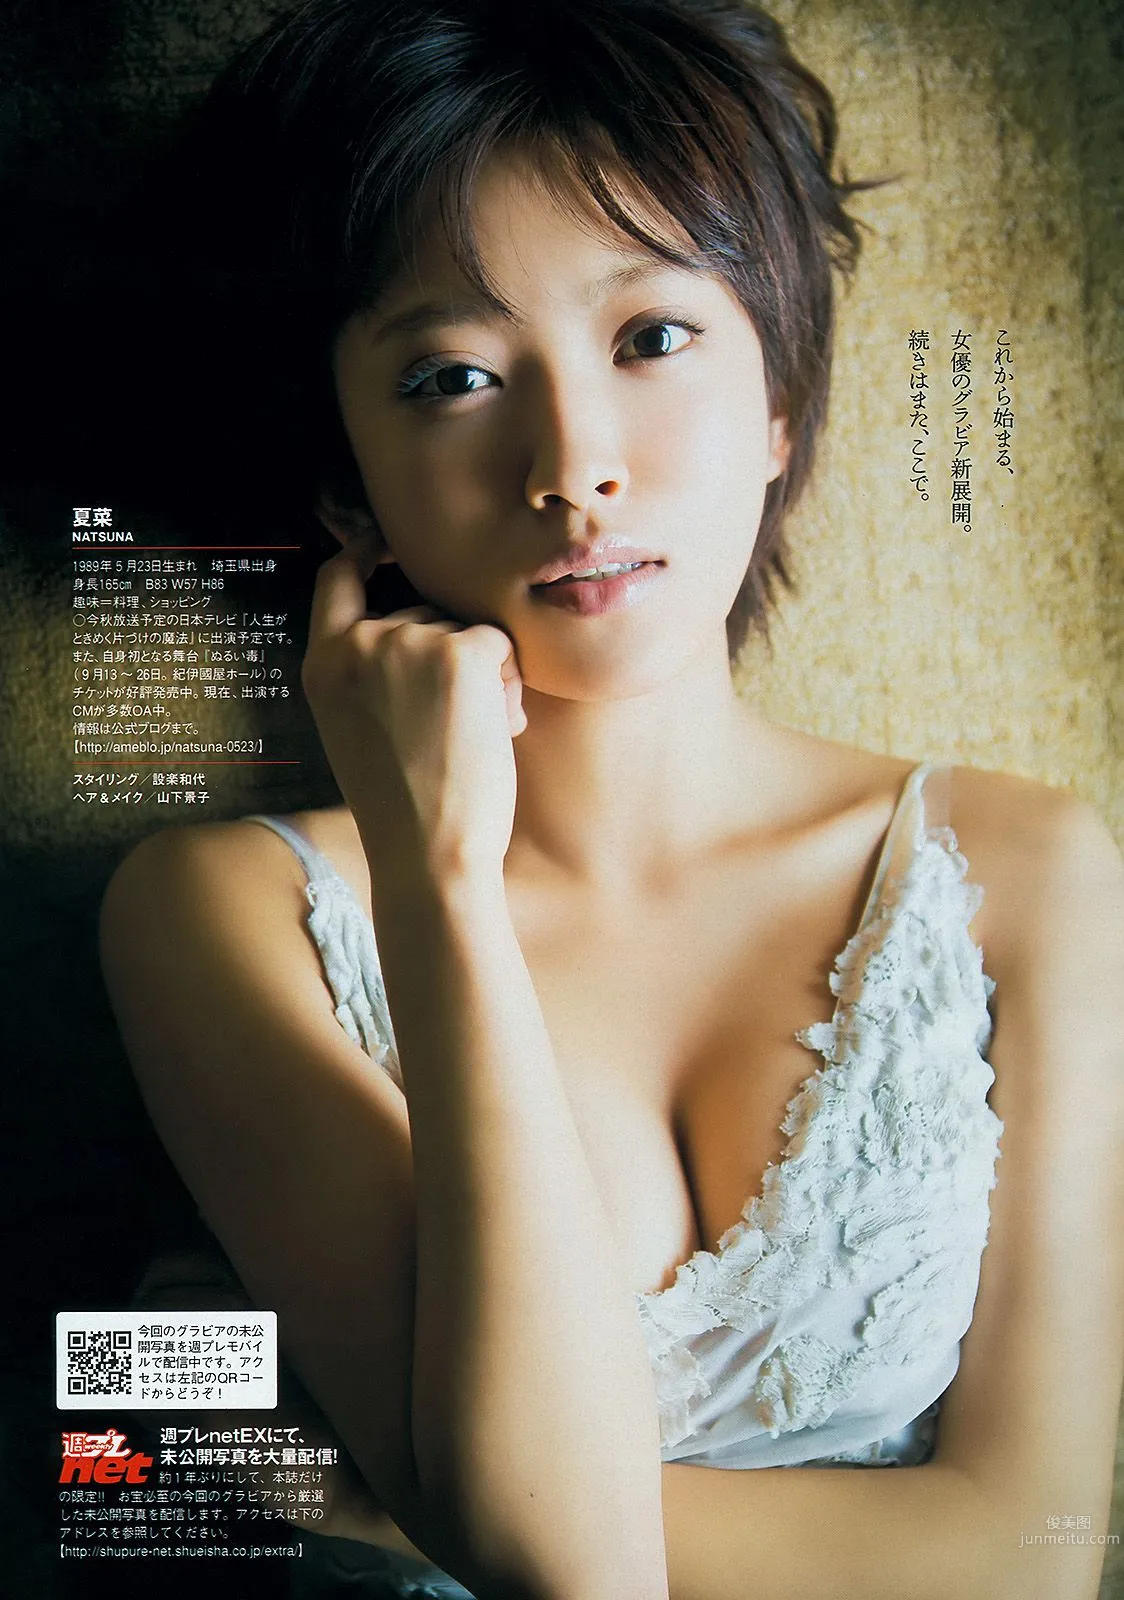 夏菜 大场美奈 島崎遙香 篠崎愛 中条あやみ [Weekly Playboy] 2013年No.32 写真杂志8